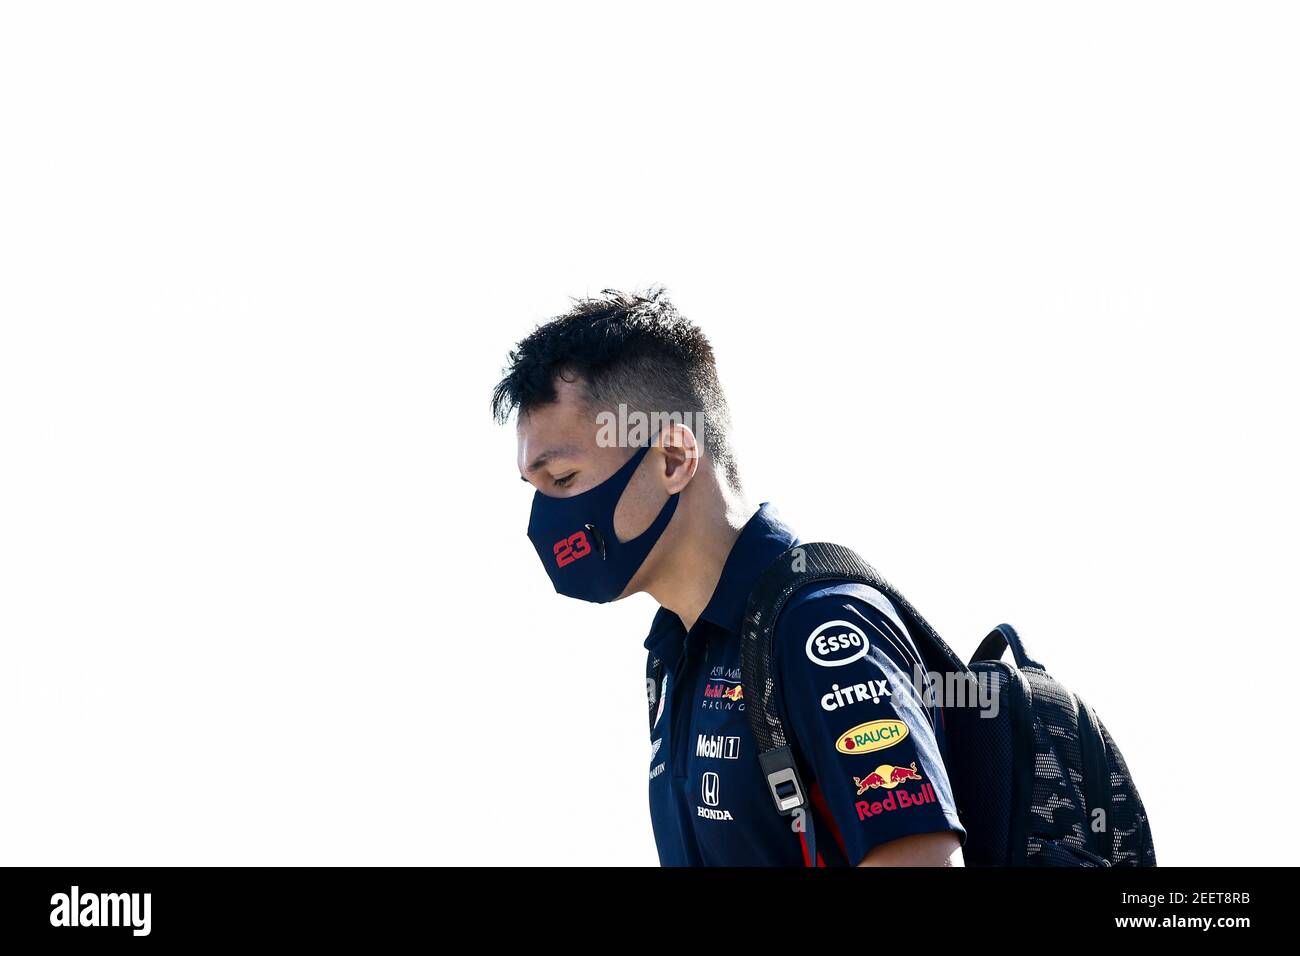 ALBON Alexander (tha), Aston Martin Red Bull Racing Honda RB16, ritratto durante la Formula 1 Pirelli Gran Premio di Gran Bretagna 2020, dal 31 luglio al 02 agosto 2020 sul circuito di Silverstone, a Silverstone, Regno Unito - Foto Xavi Bonilla/DPPI Foto Stock